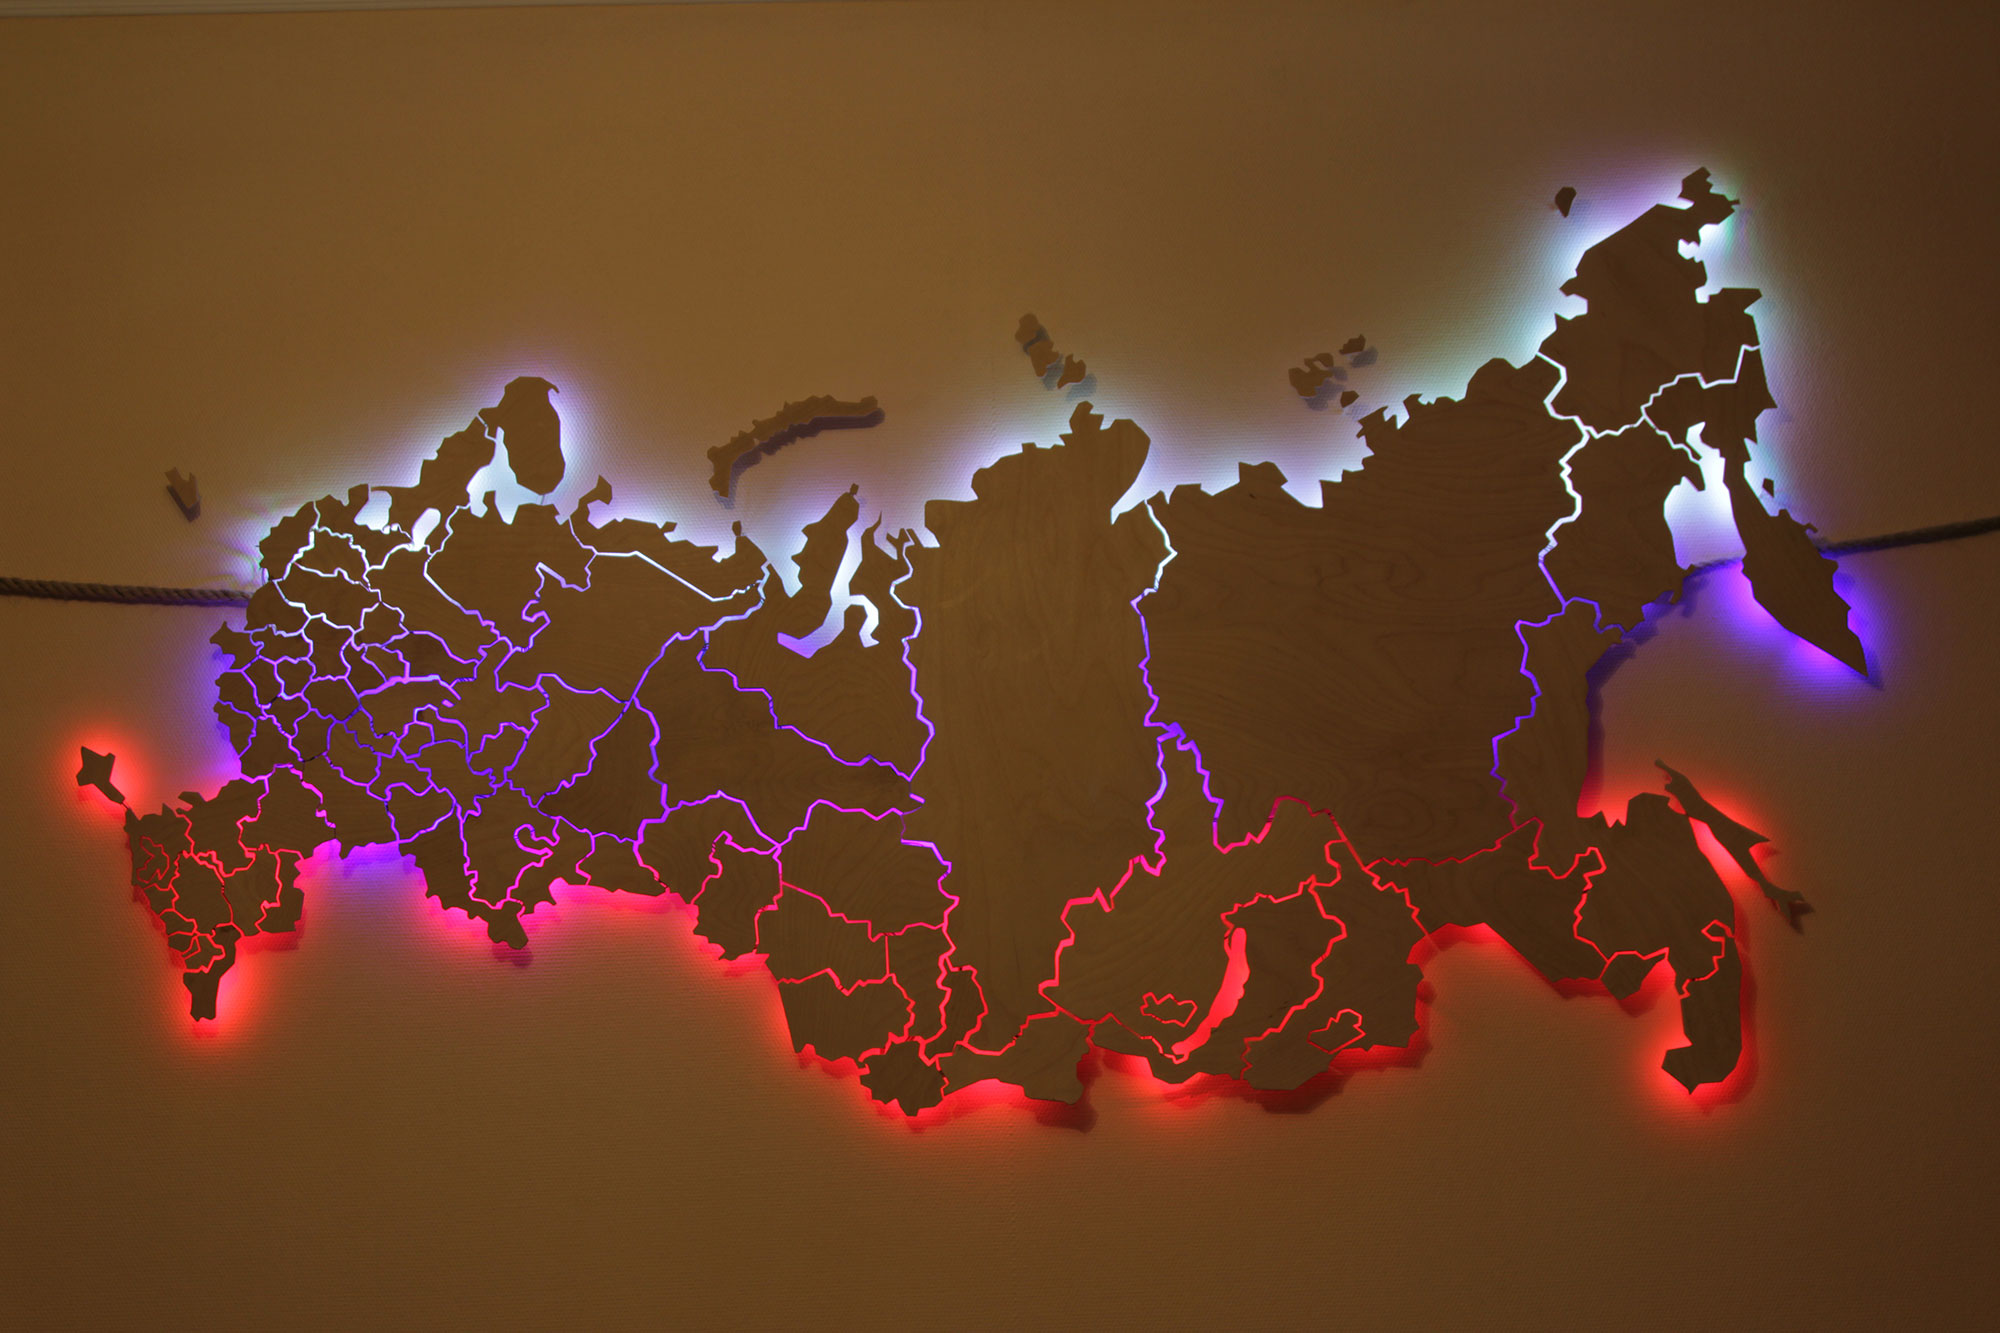 Https карта россии